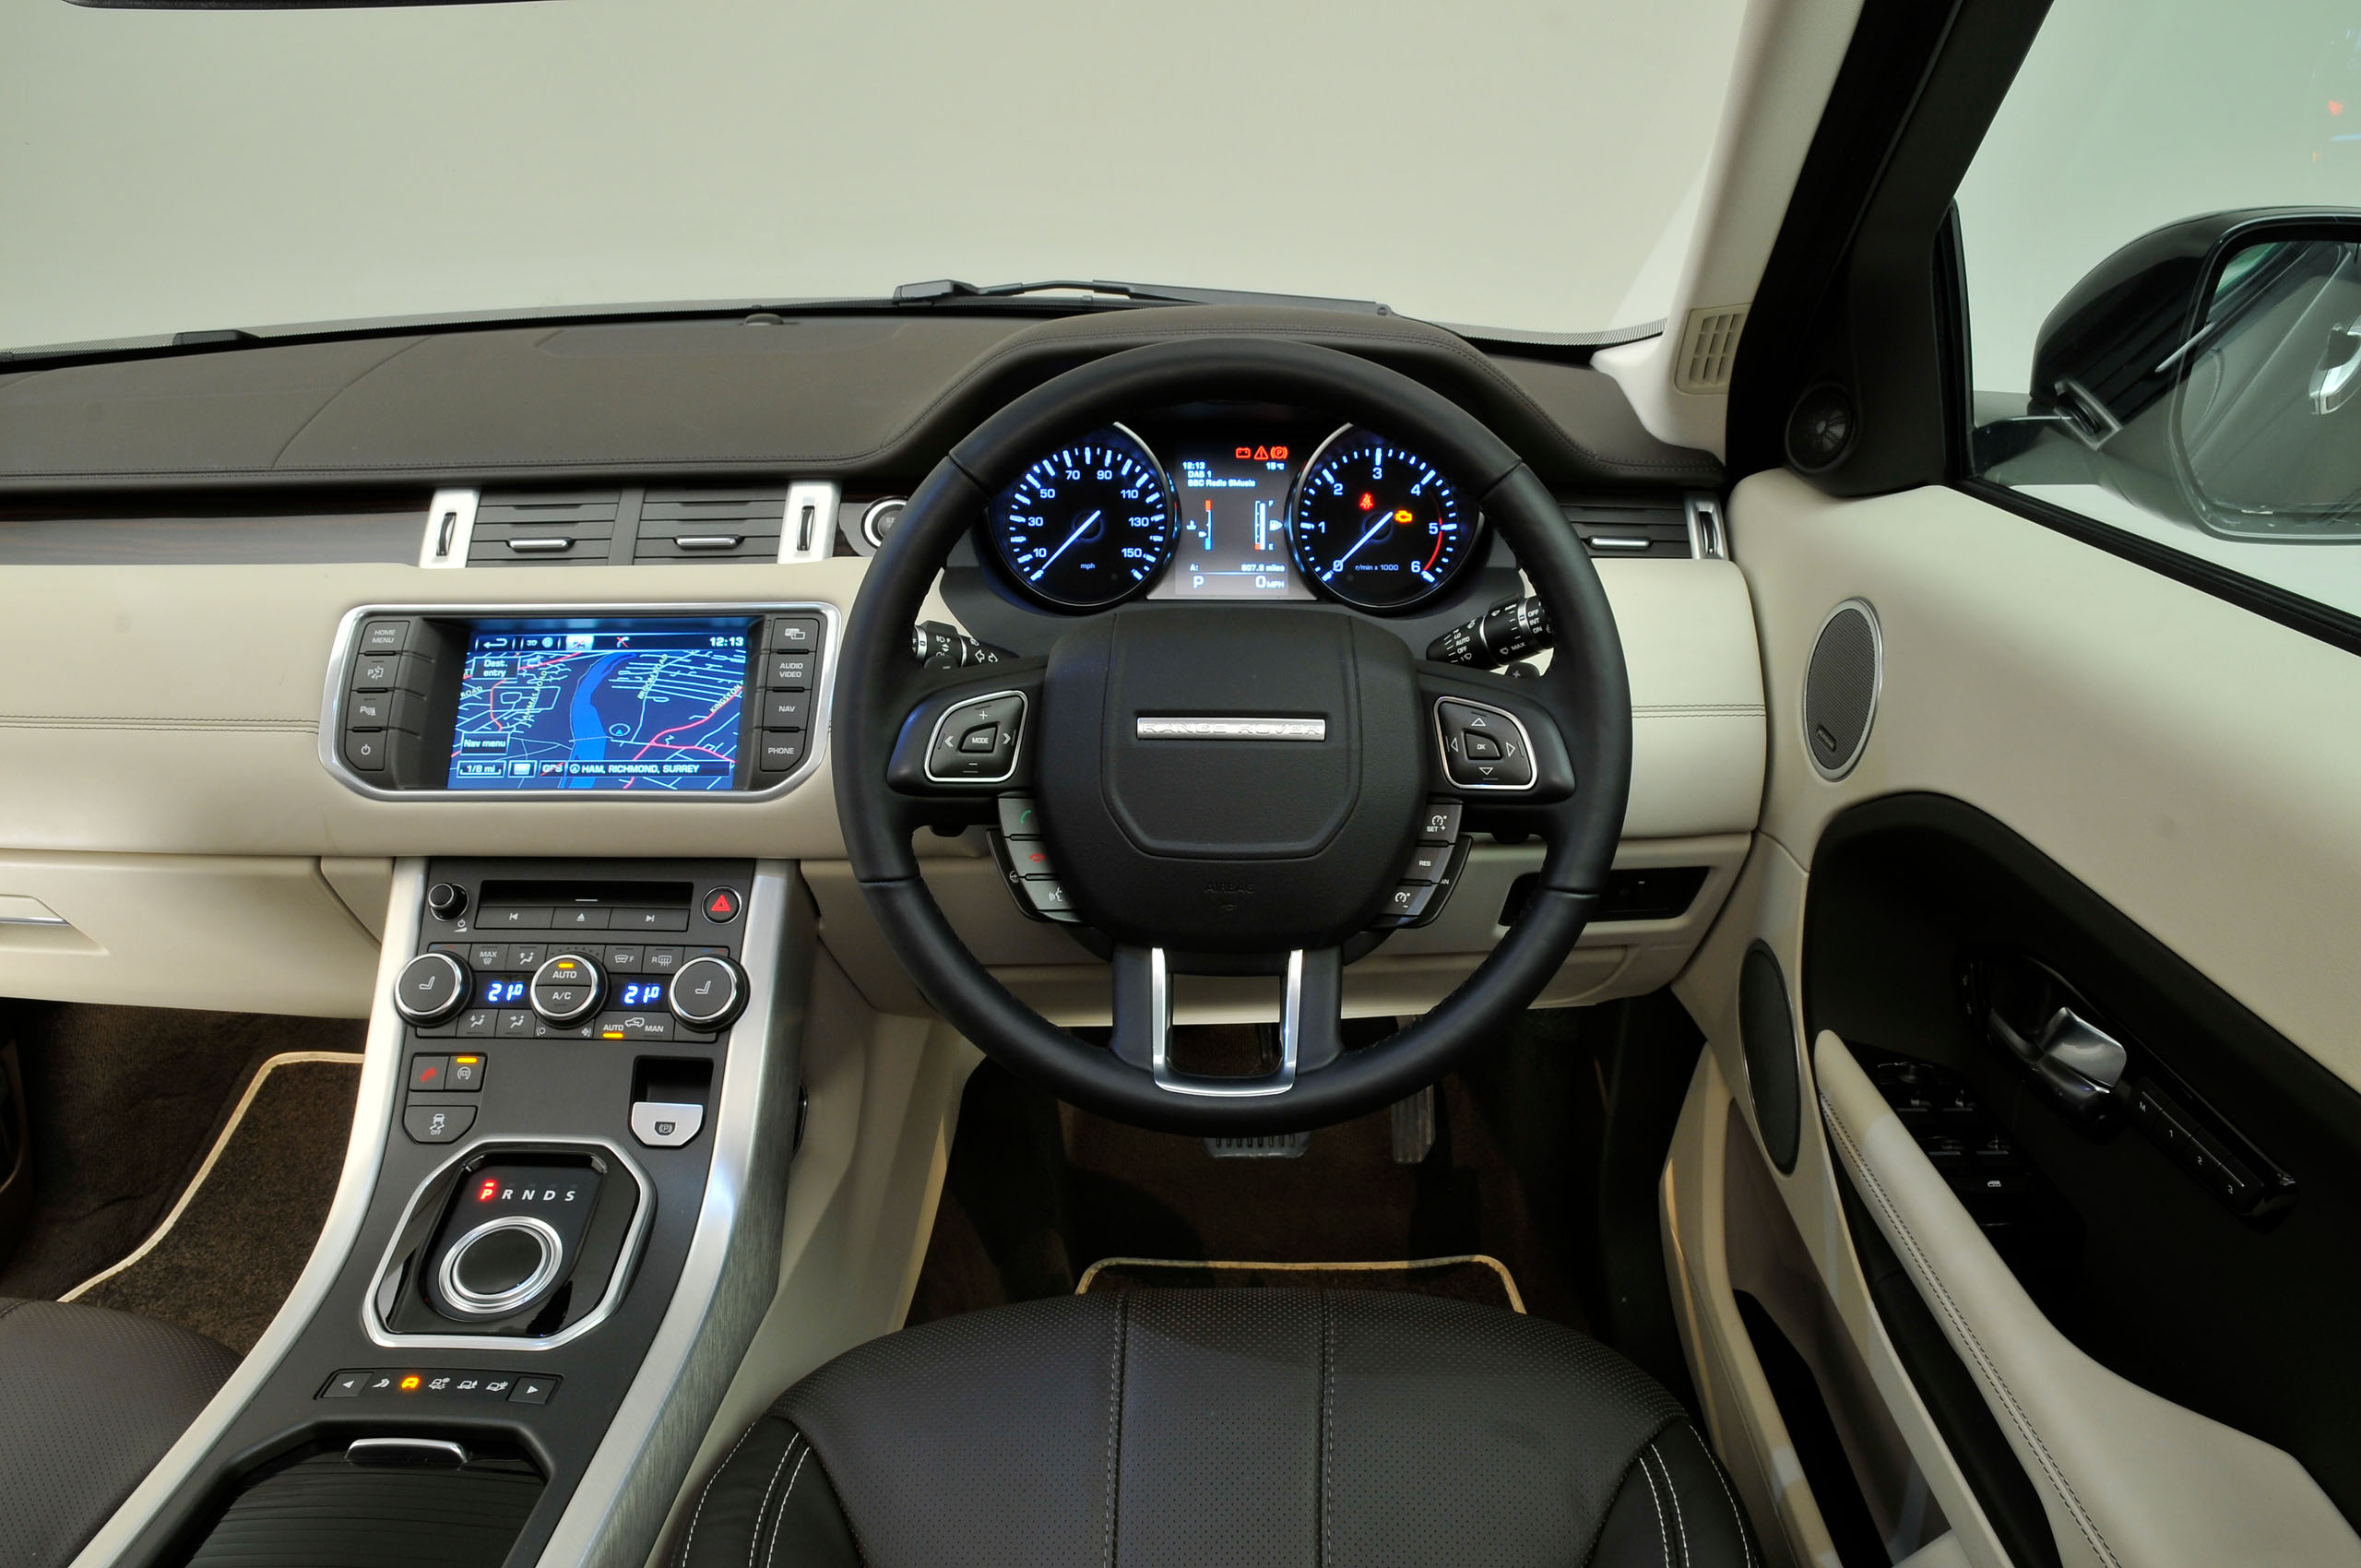 2018 Land Rover Range Rover Evoque Technology